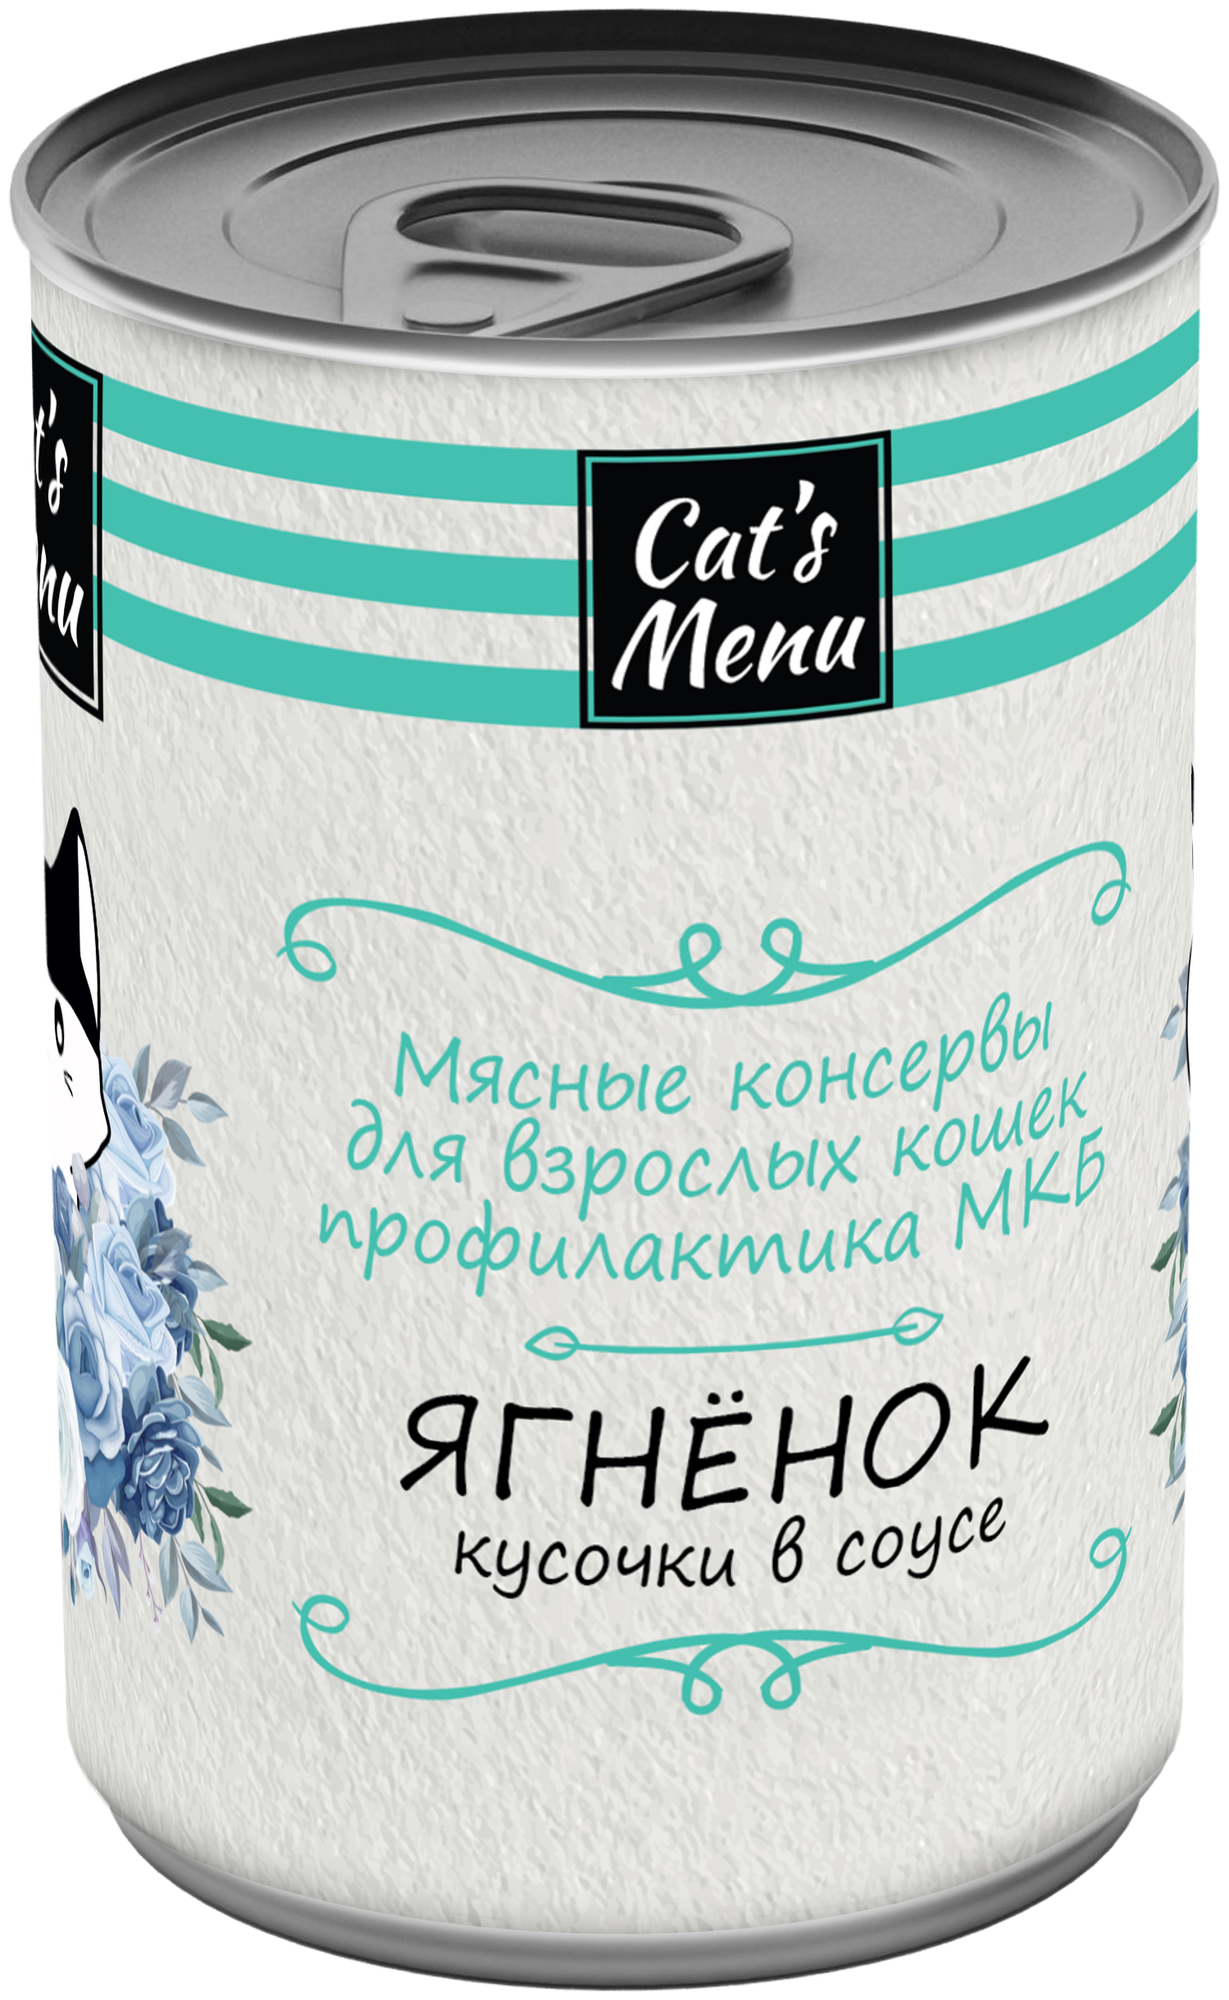 Cat's Menu Консервы для кошек Ягненок кусочки в соусе профилактика МКБ 12шт по 340гр - фотография № 2